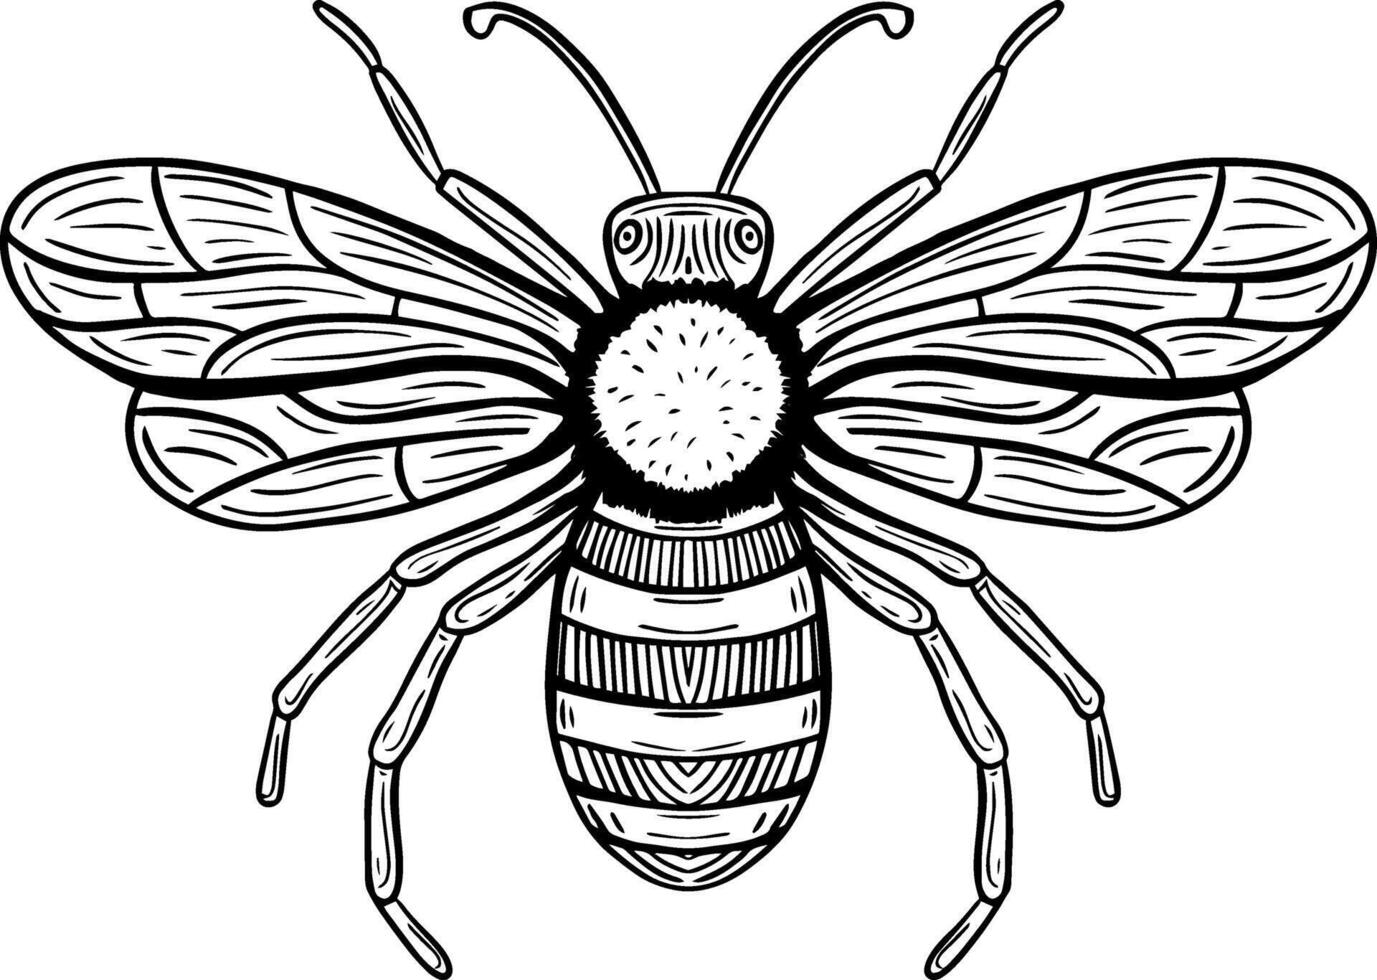 honing bij hand- getrokken gegraveerde schetsen tekening vector